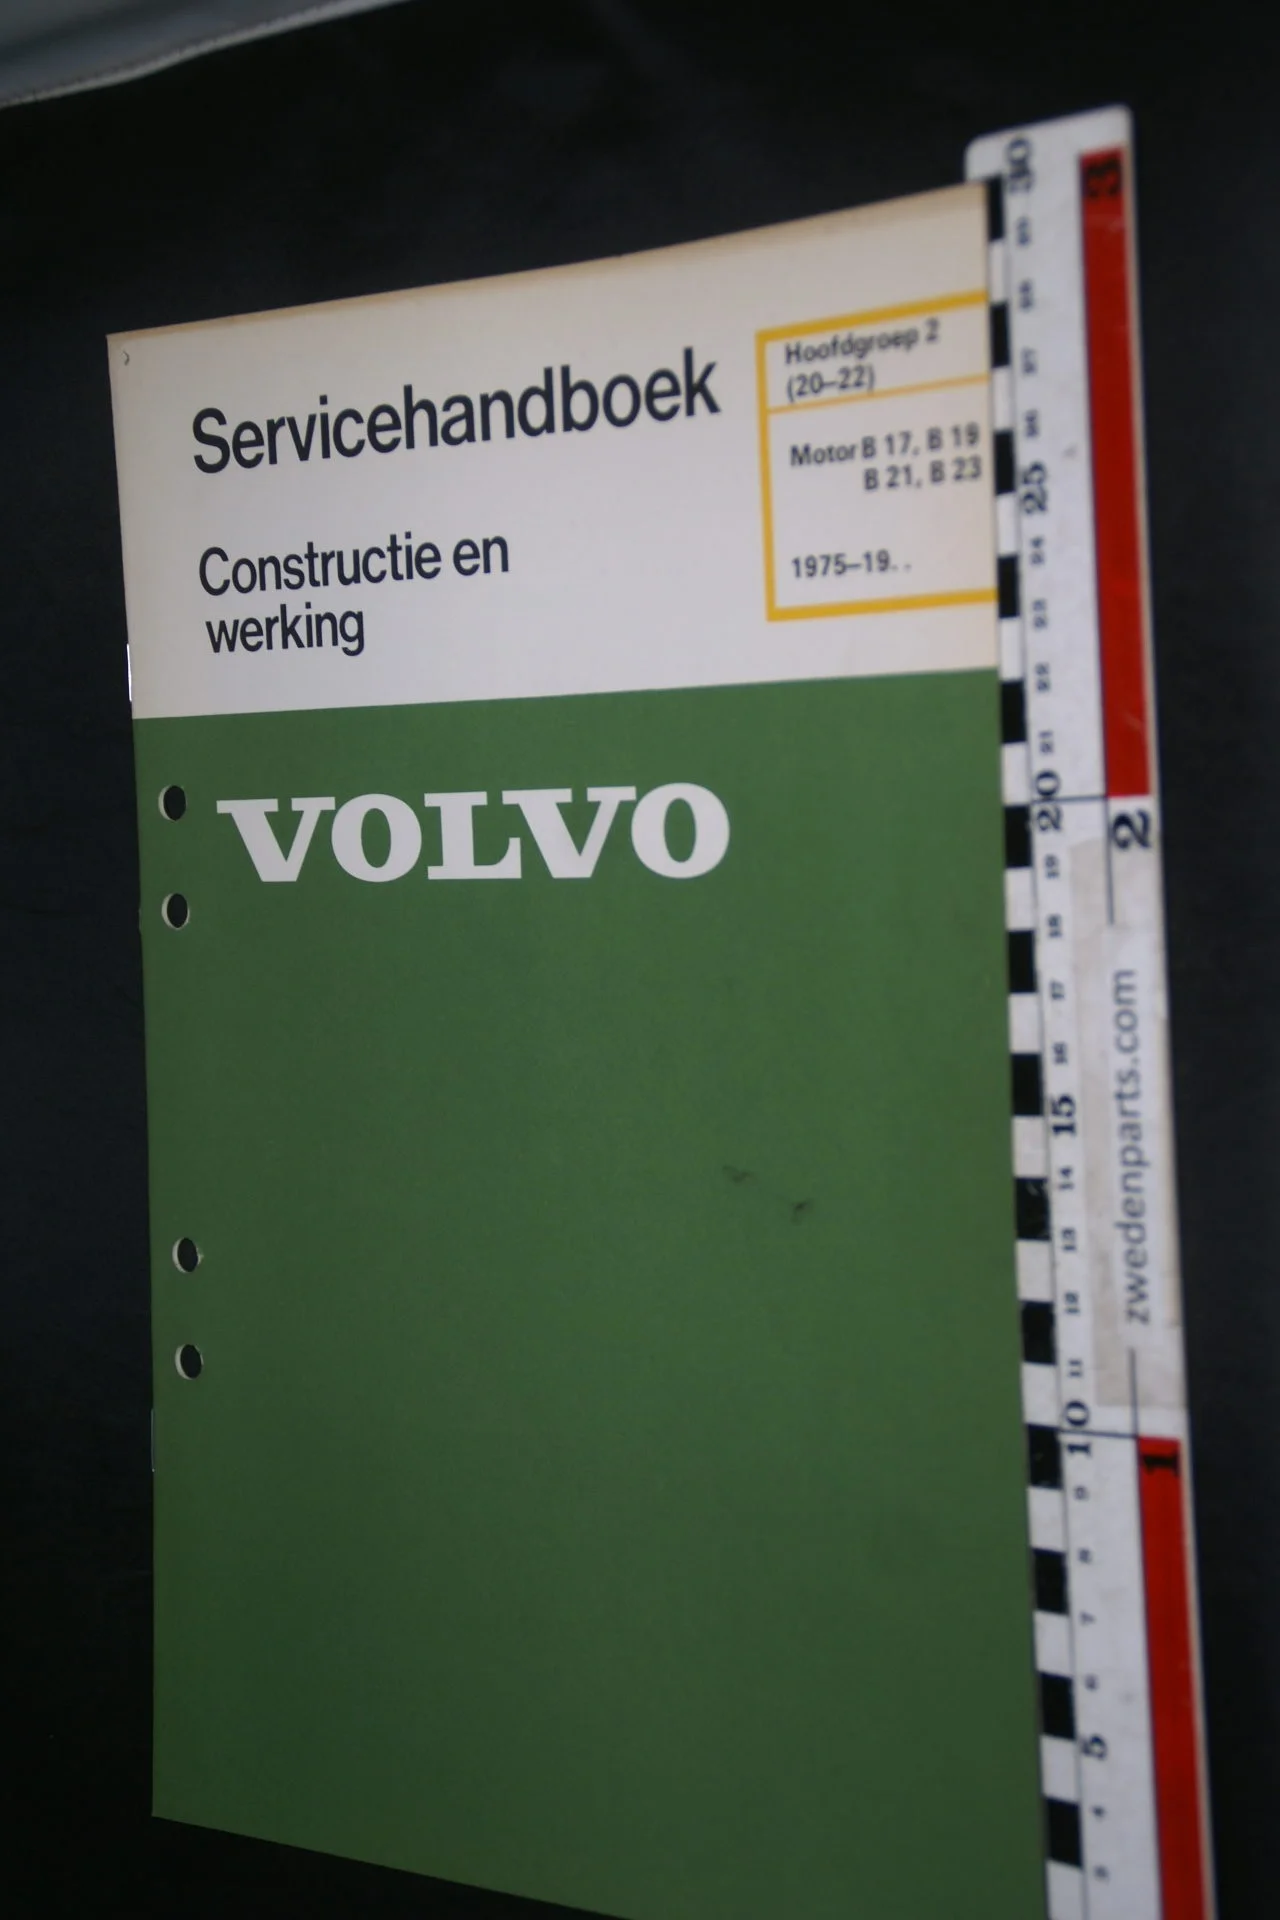 DSC08487 1981 origineel Volvo servicehandboek  2 (20-22) motor B17, B19, B21, B23 1 van 800 TP 30293-1